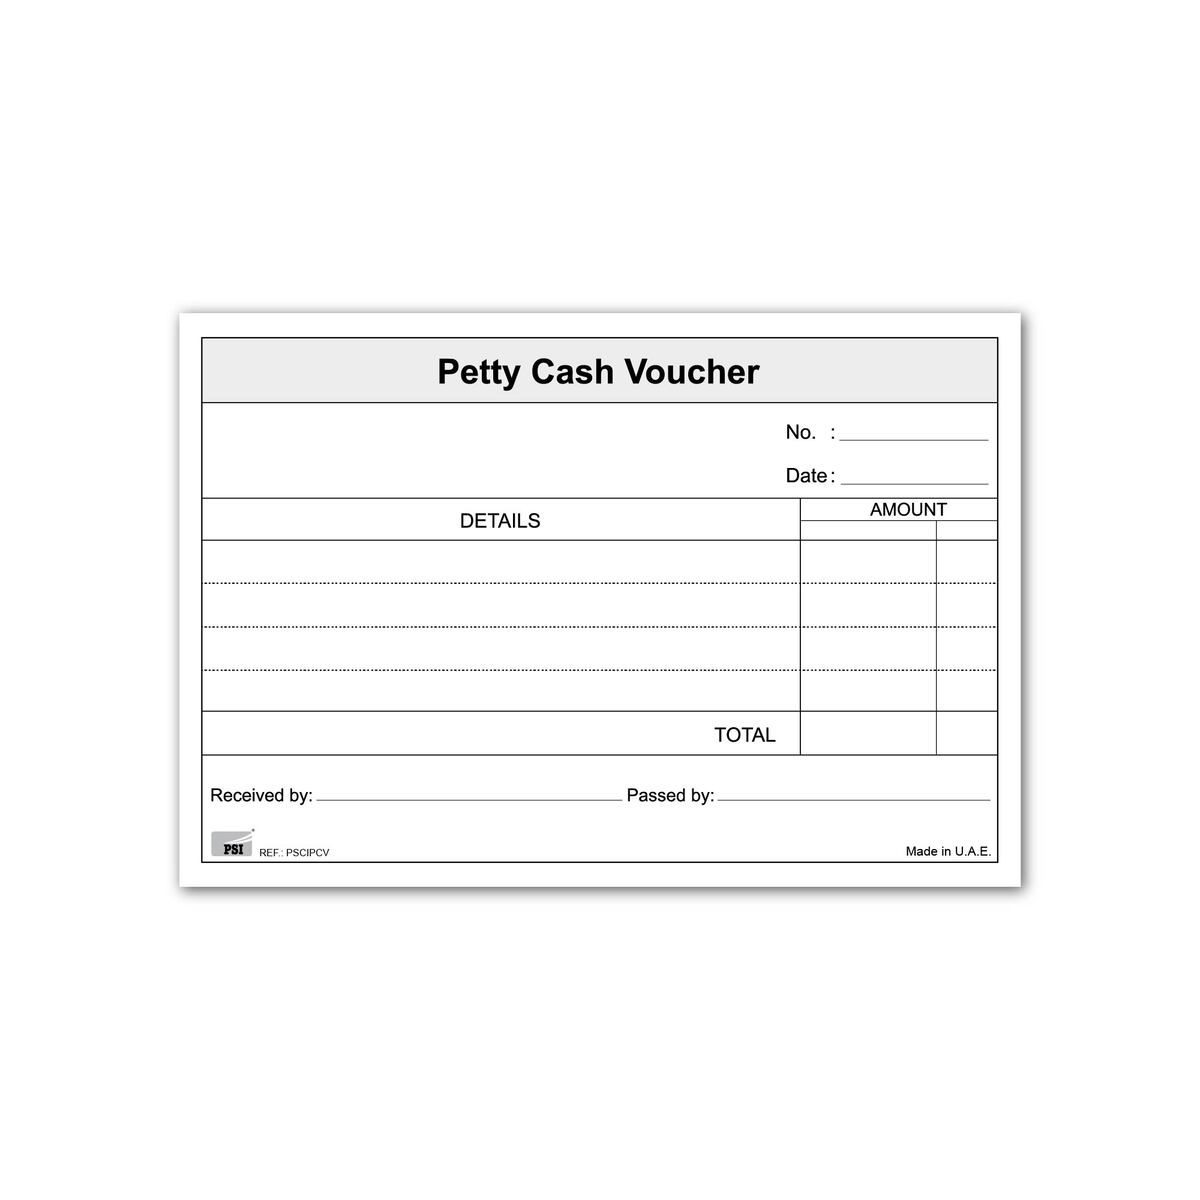 PSI Petty Cash Voucher 50 Sheets PSCIPCV